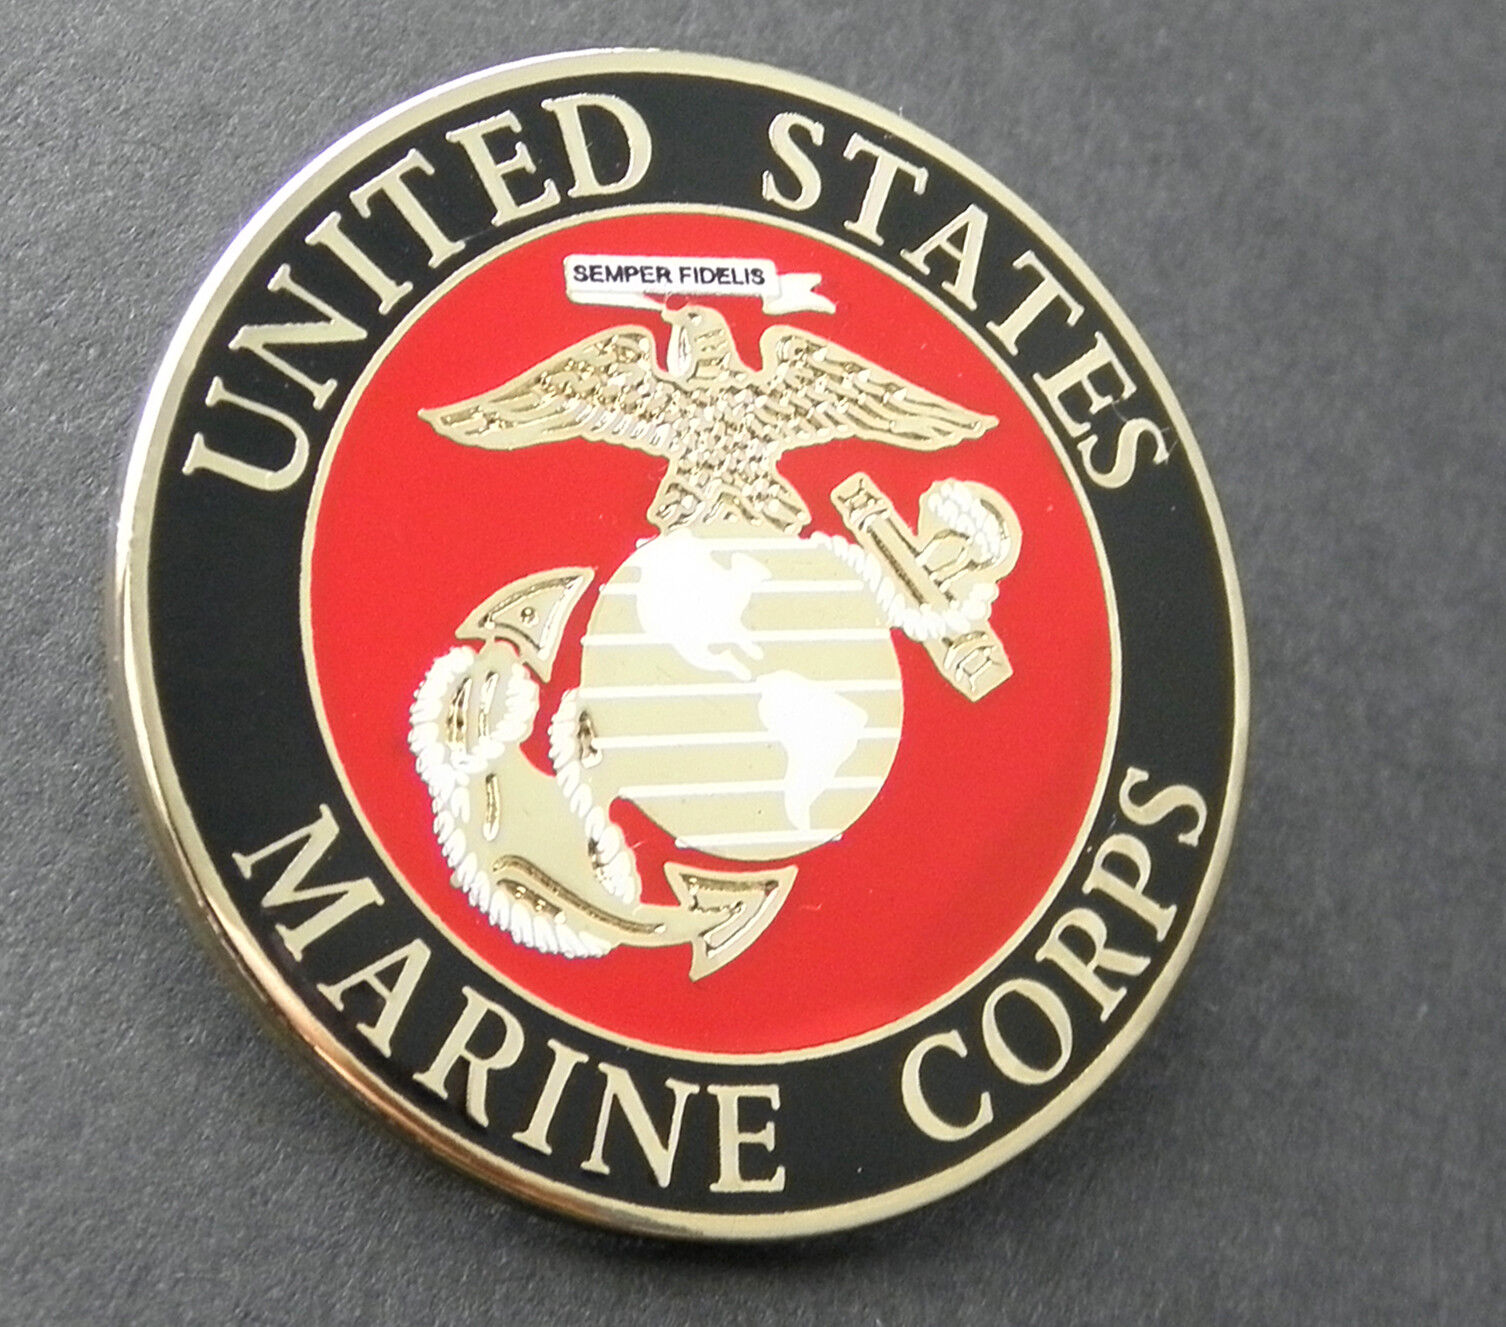 US MARINE CORPS USMC MARINES LARGE LAPEL PIN BADGE 1.5 INCHES